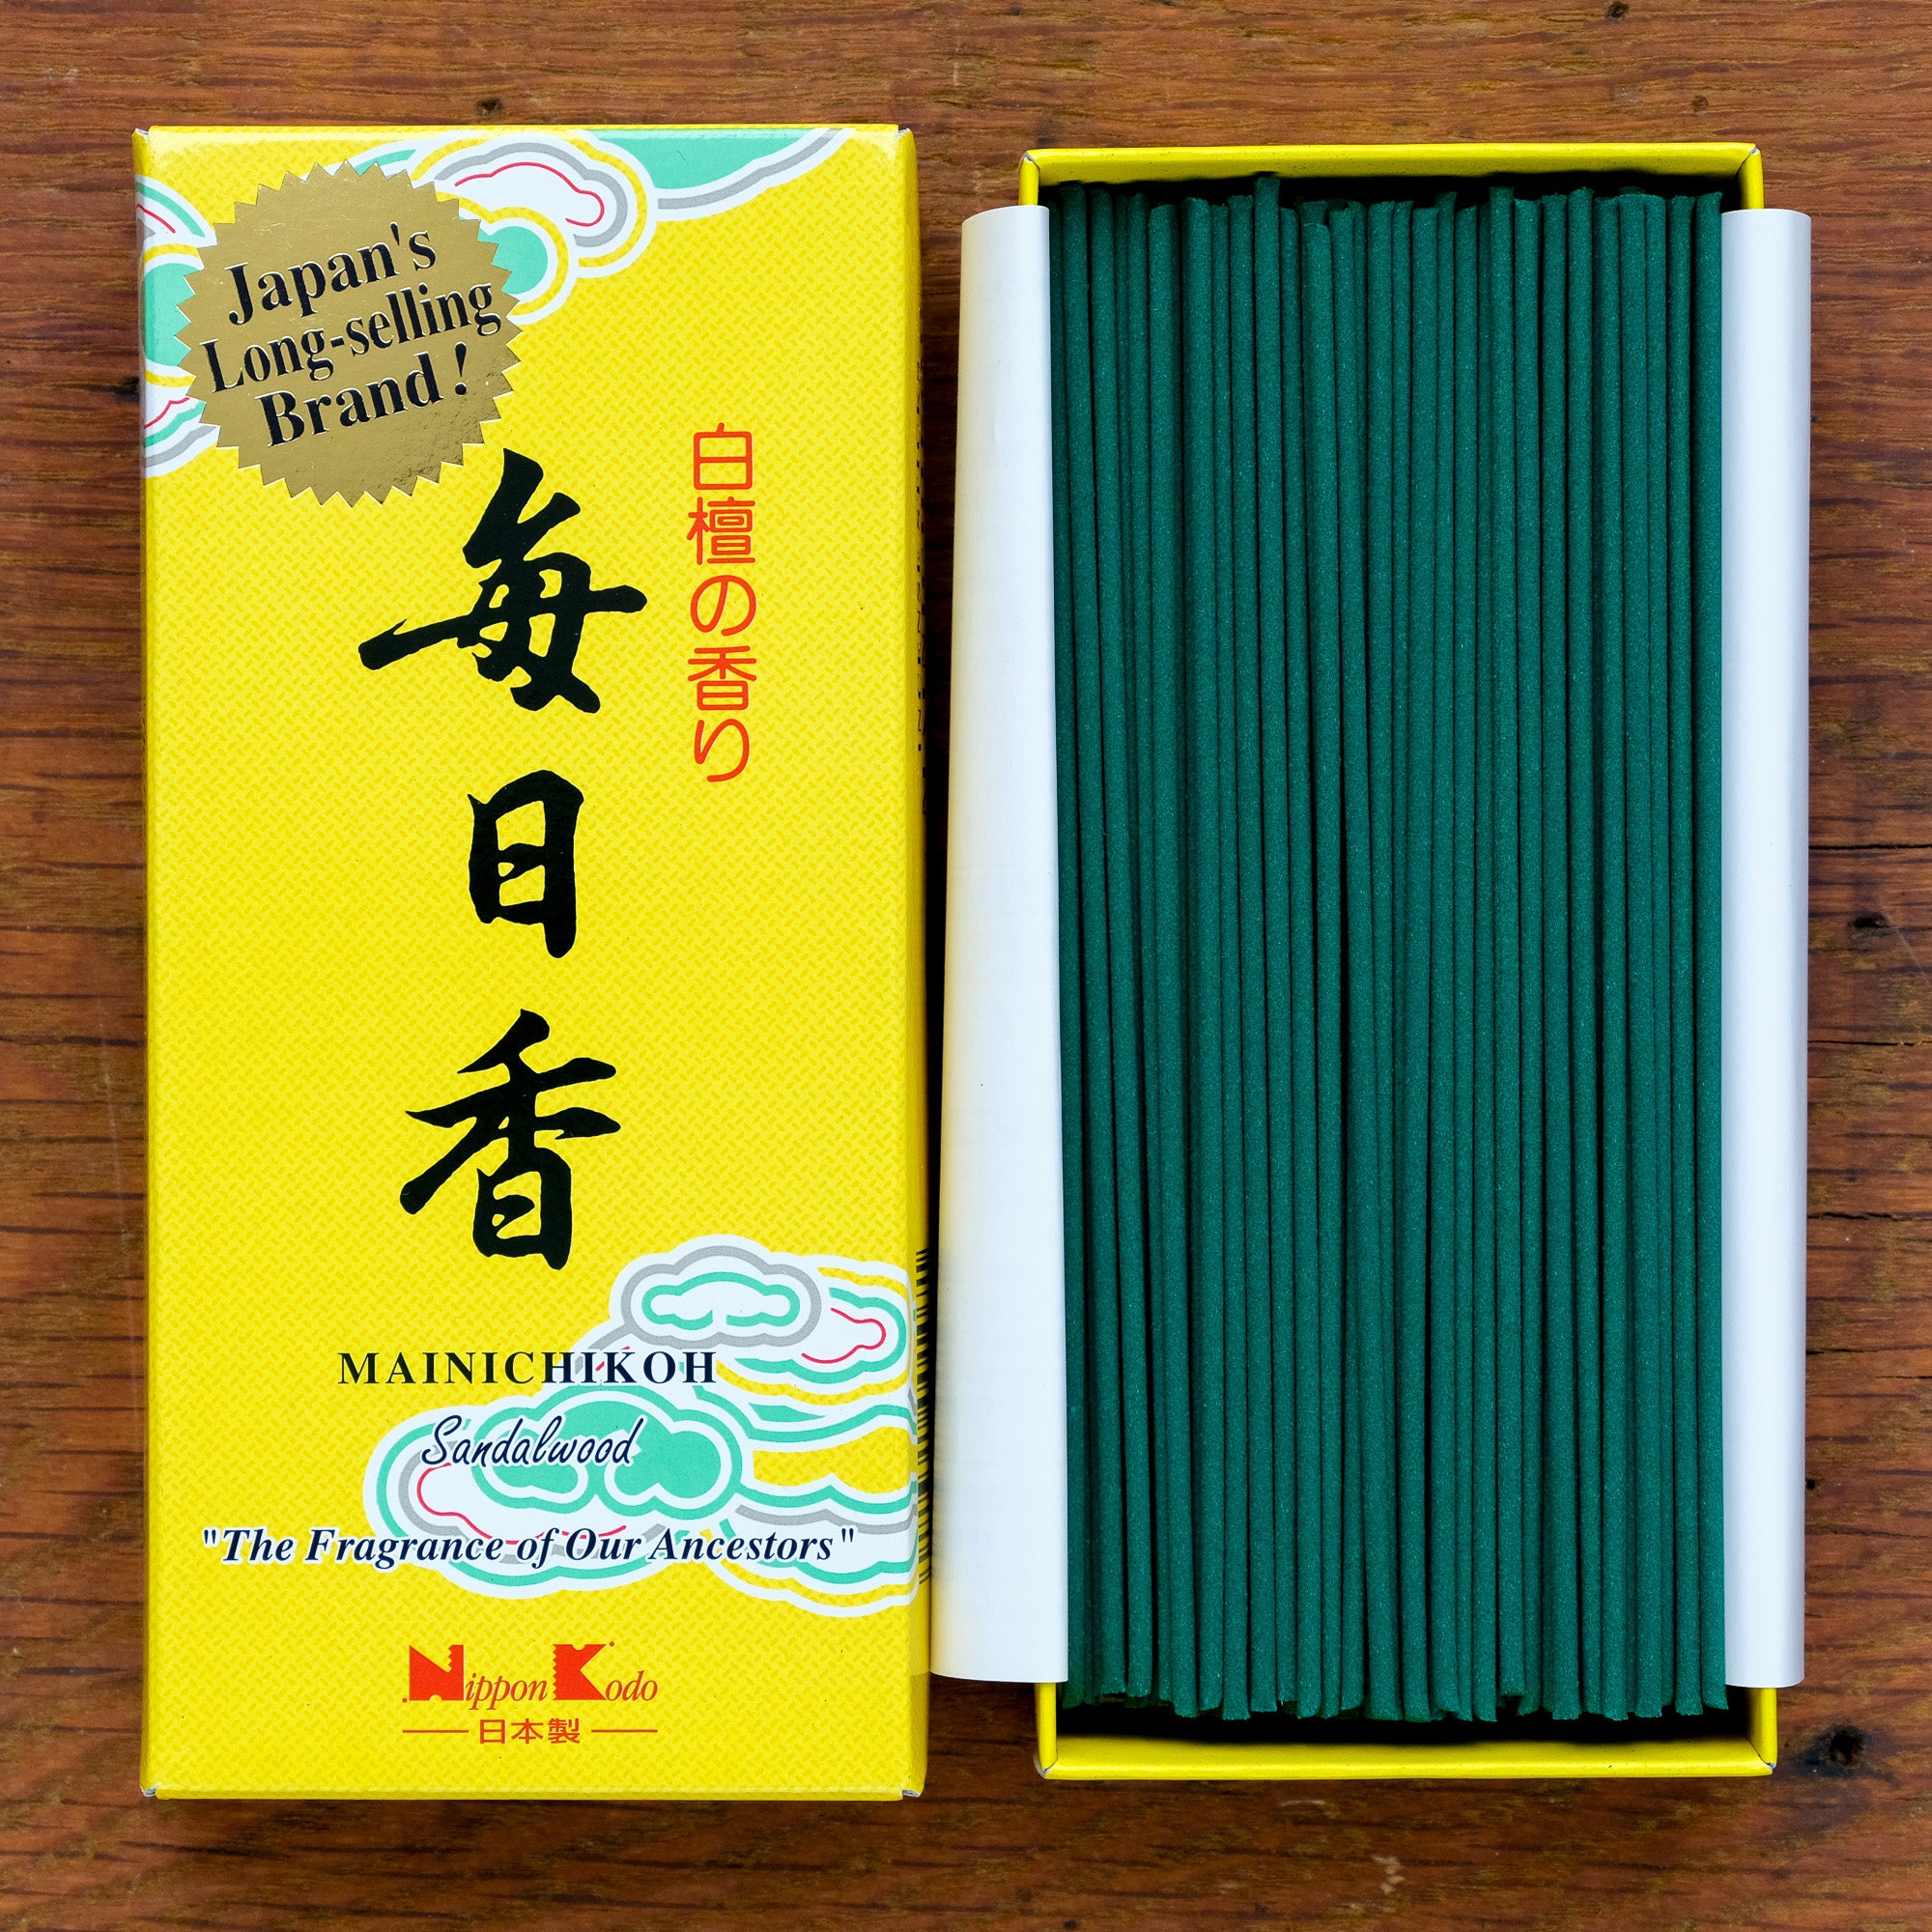 Mainichi-koh Sandalwood Incense